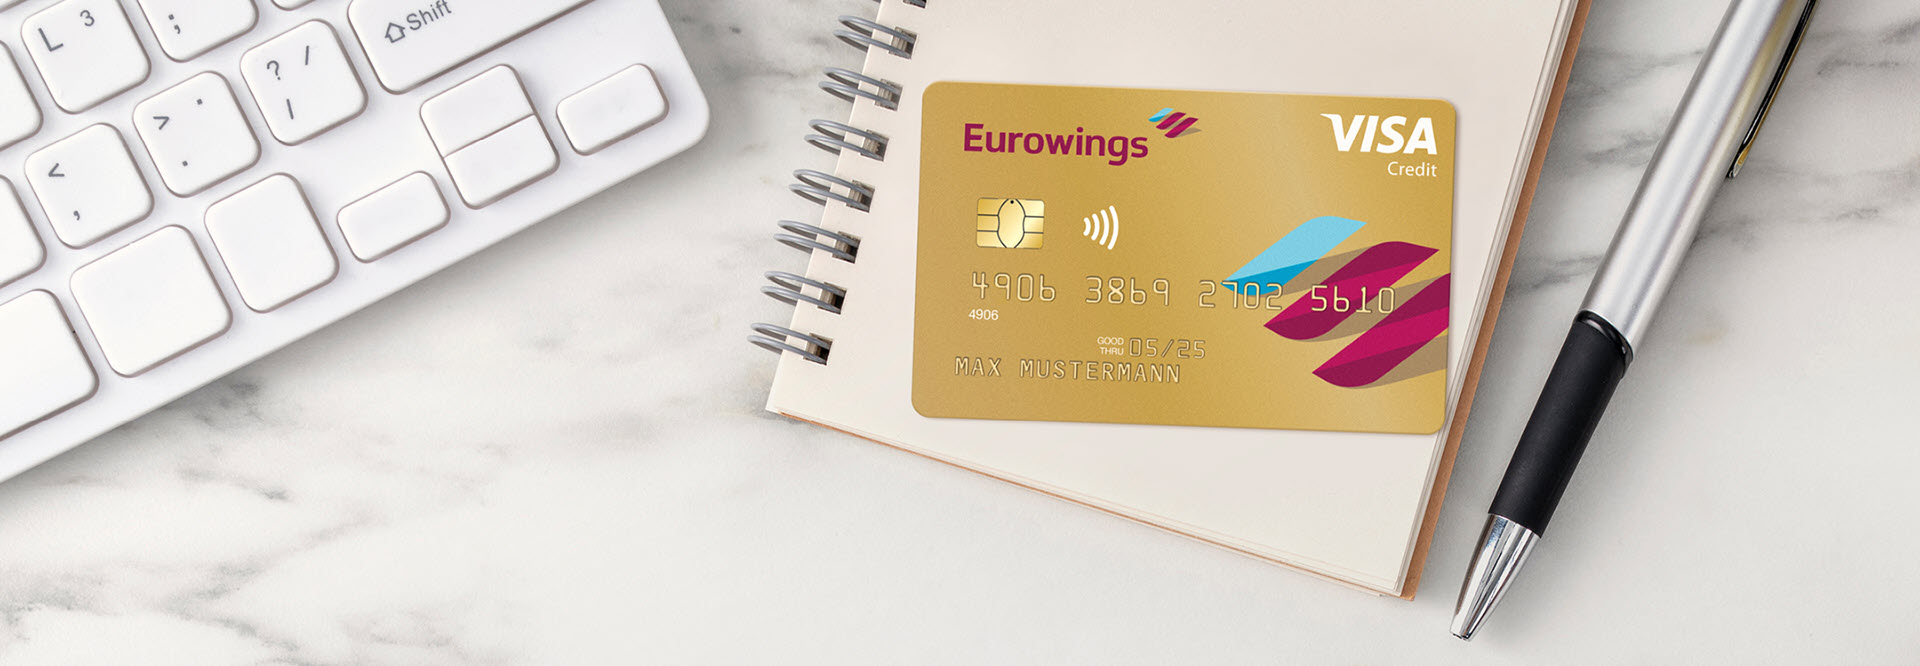 Barclays startet neue Kreditkarte mit Eurowings und Miles & More